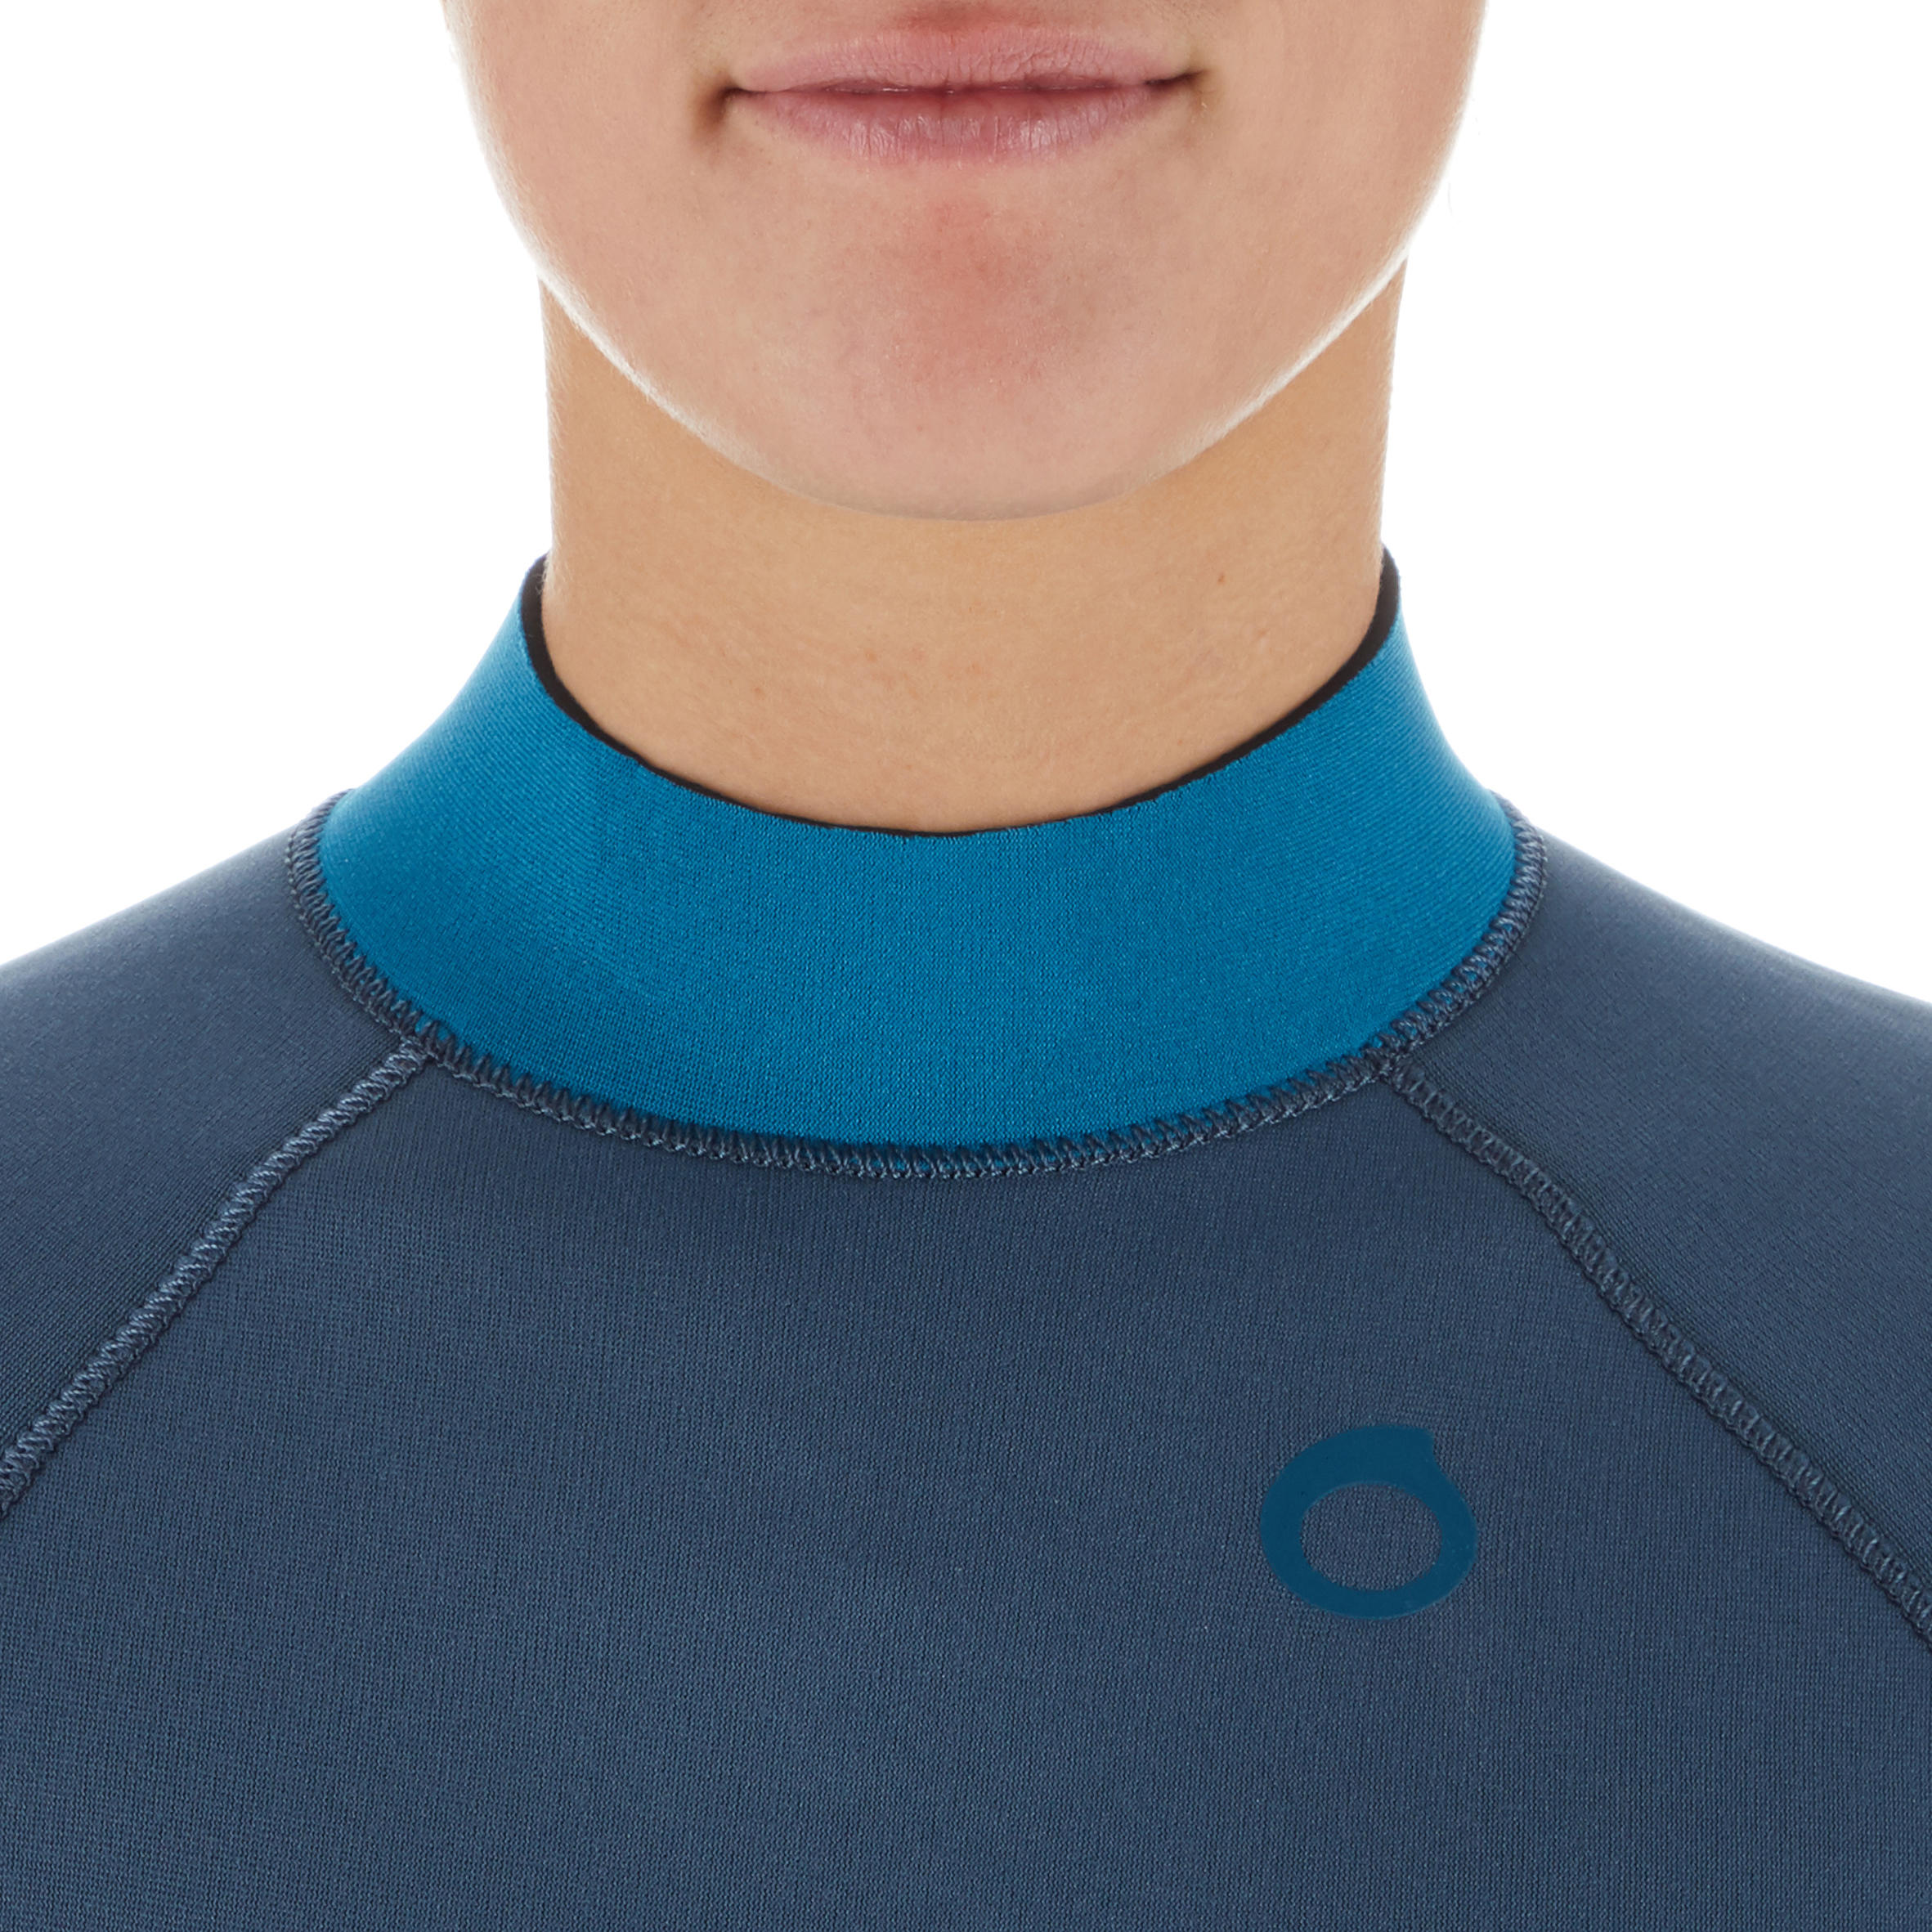 Women's diving wetsuit 3 mm neoprene SCD 500 storm grey 5/10